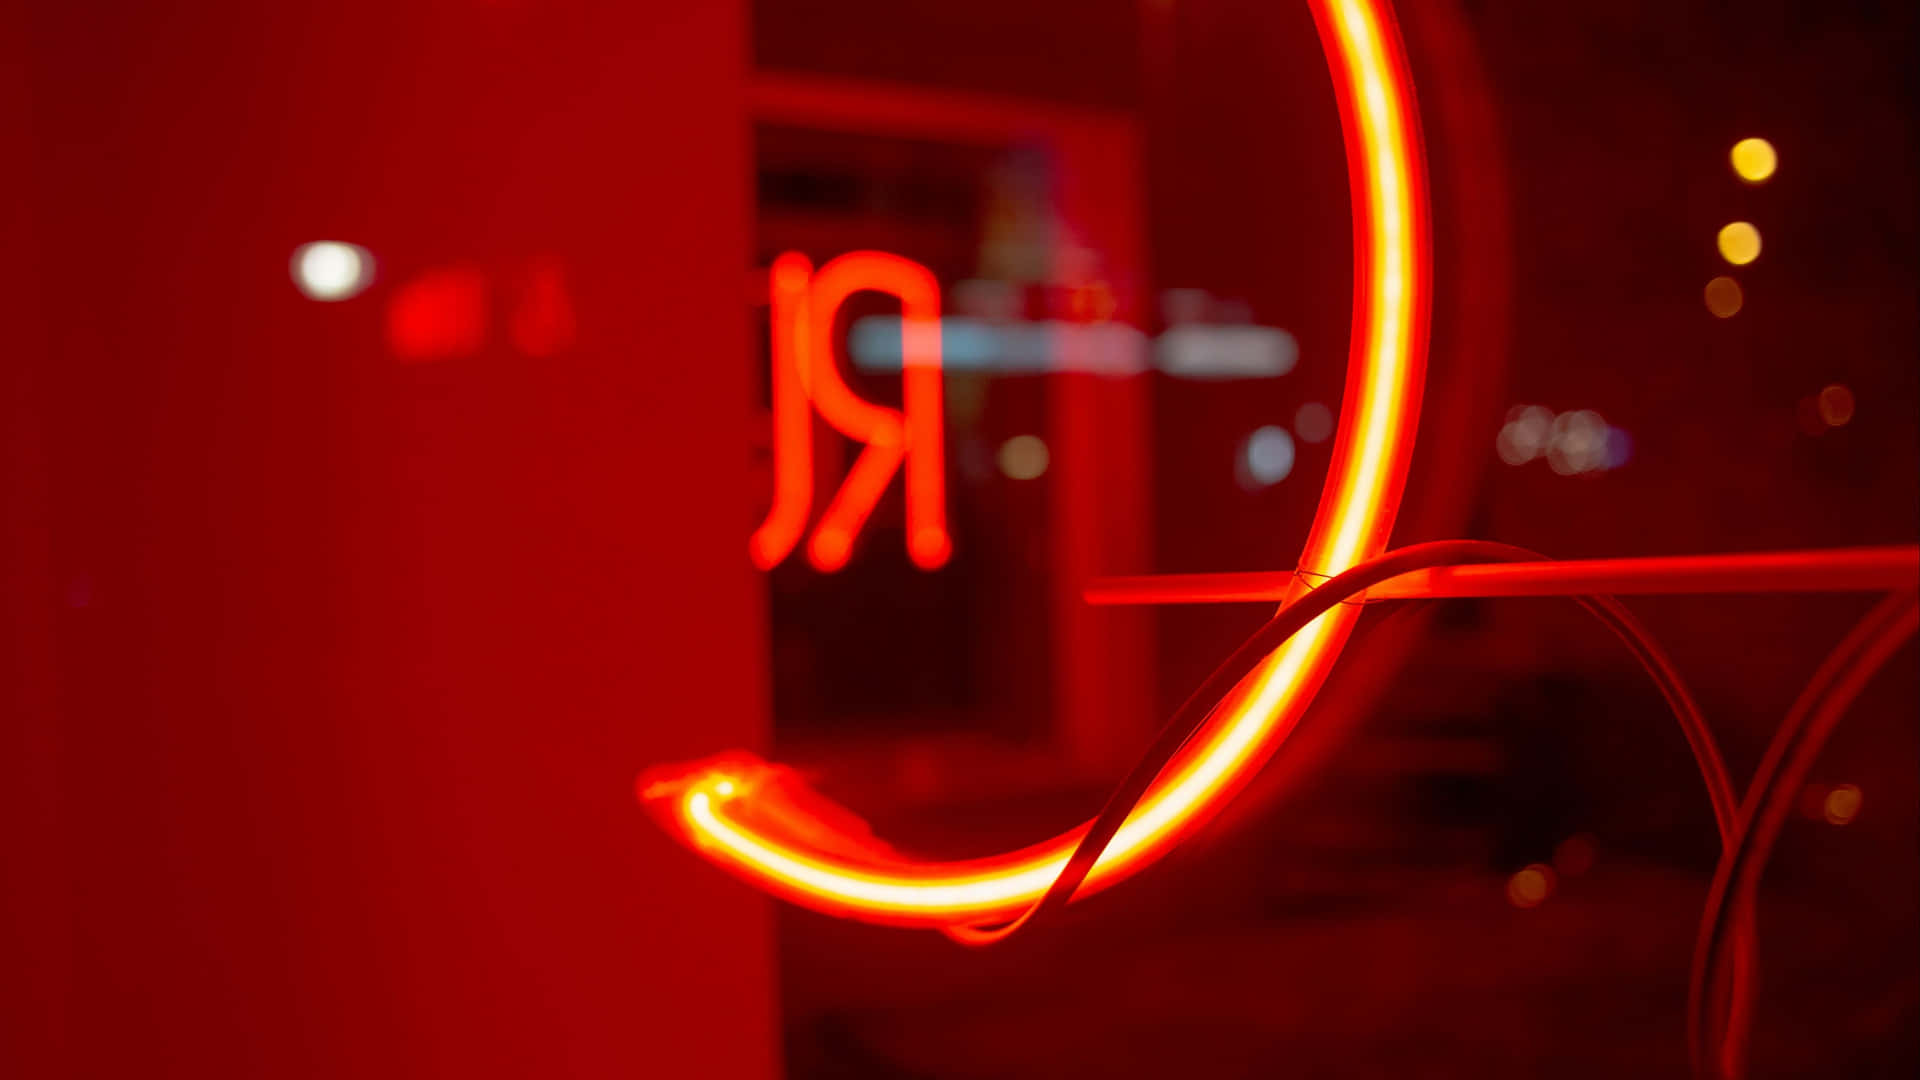 Lospatrones Geométricos De Luz Rojos Crean Un Paisaje Abstracto De Ensueño. Fondo de pantalla